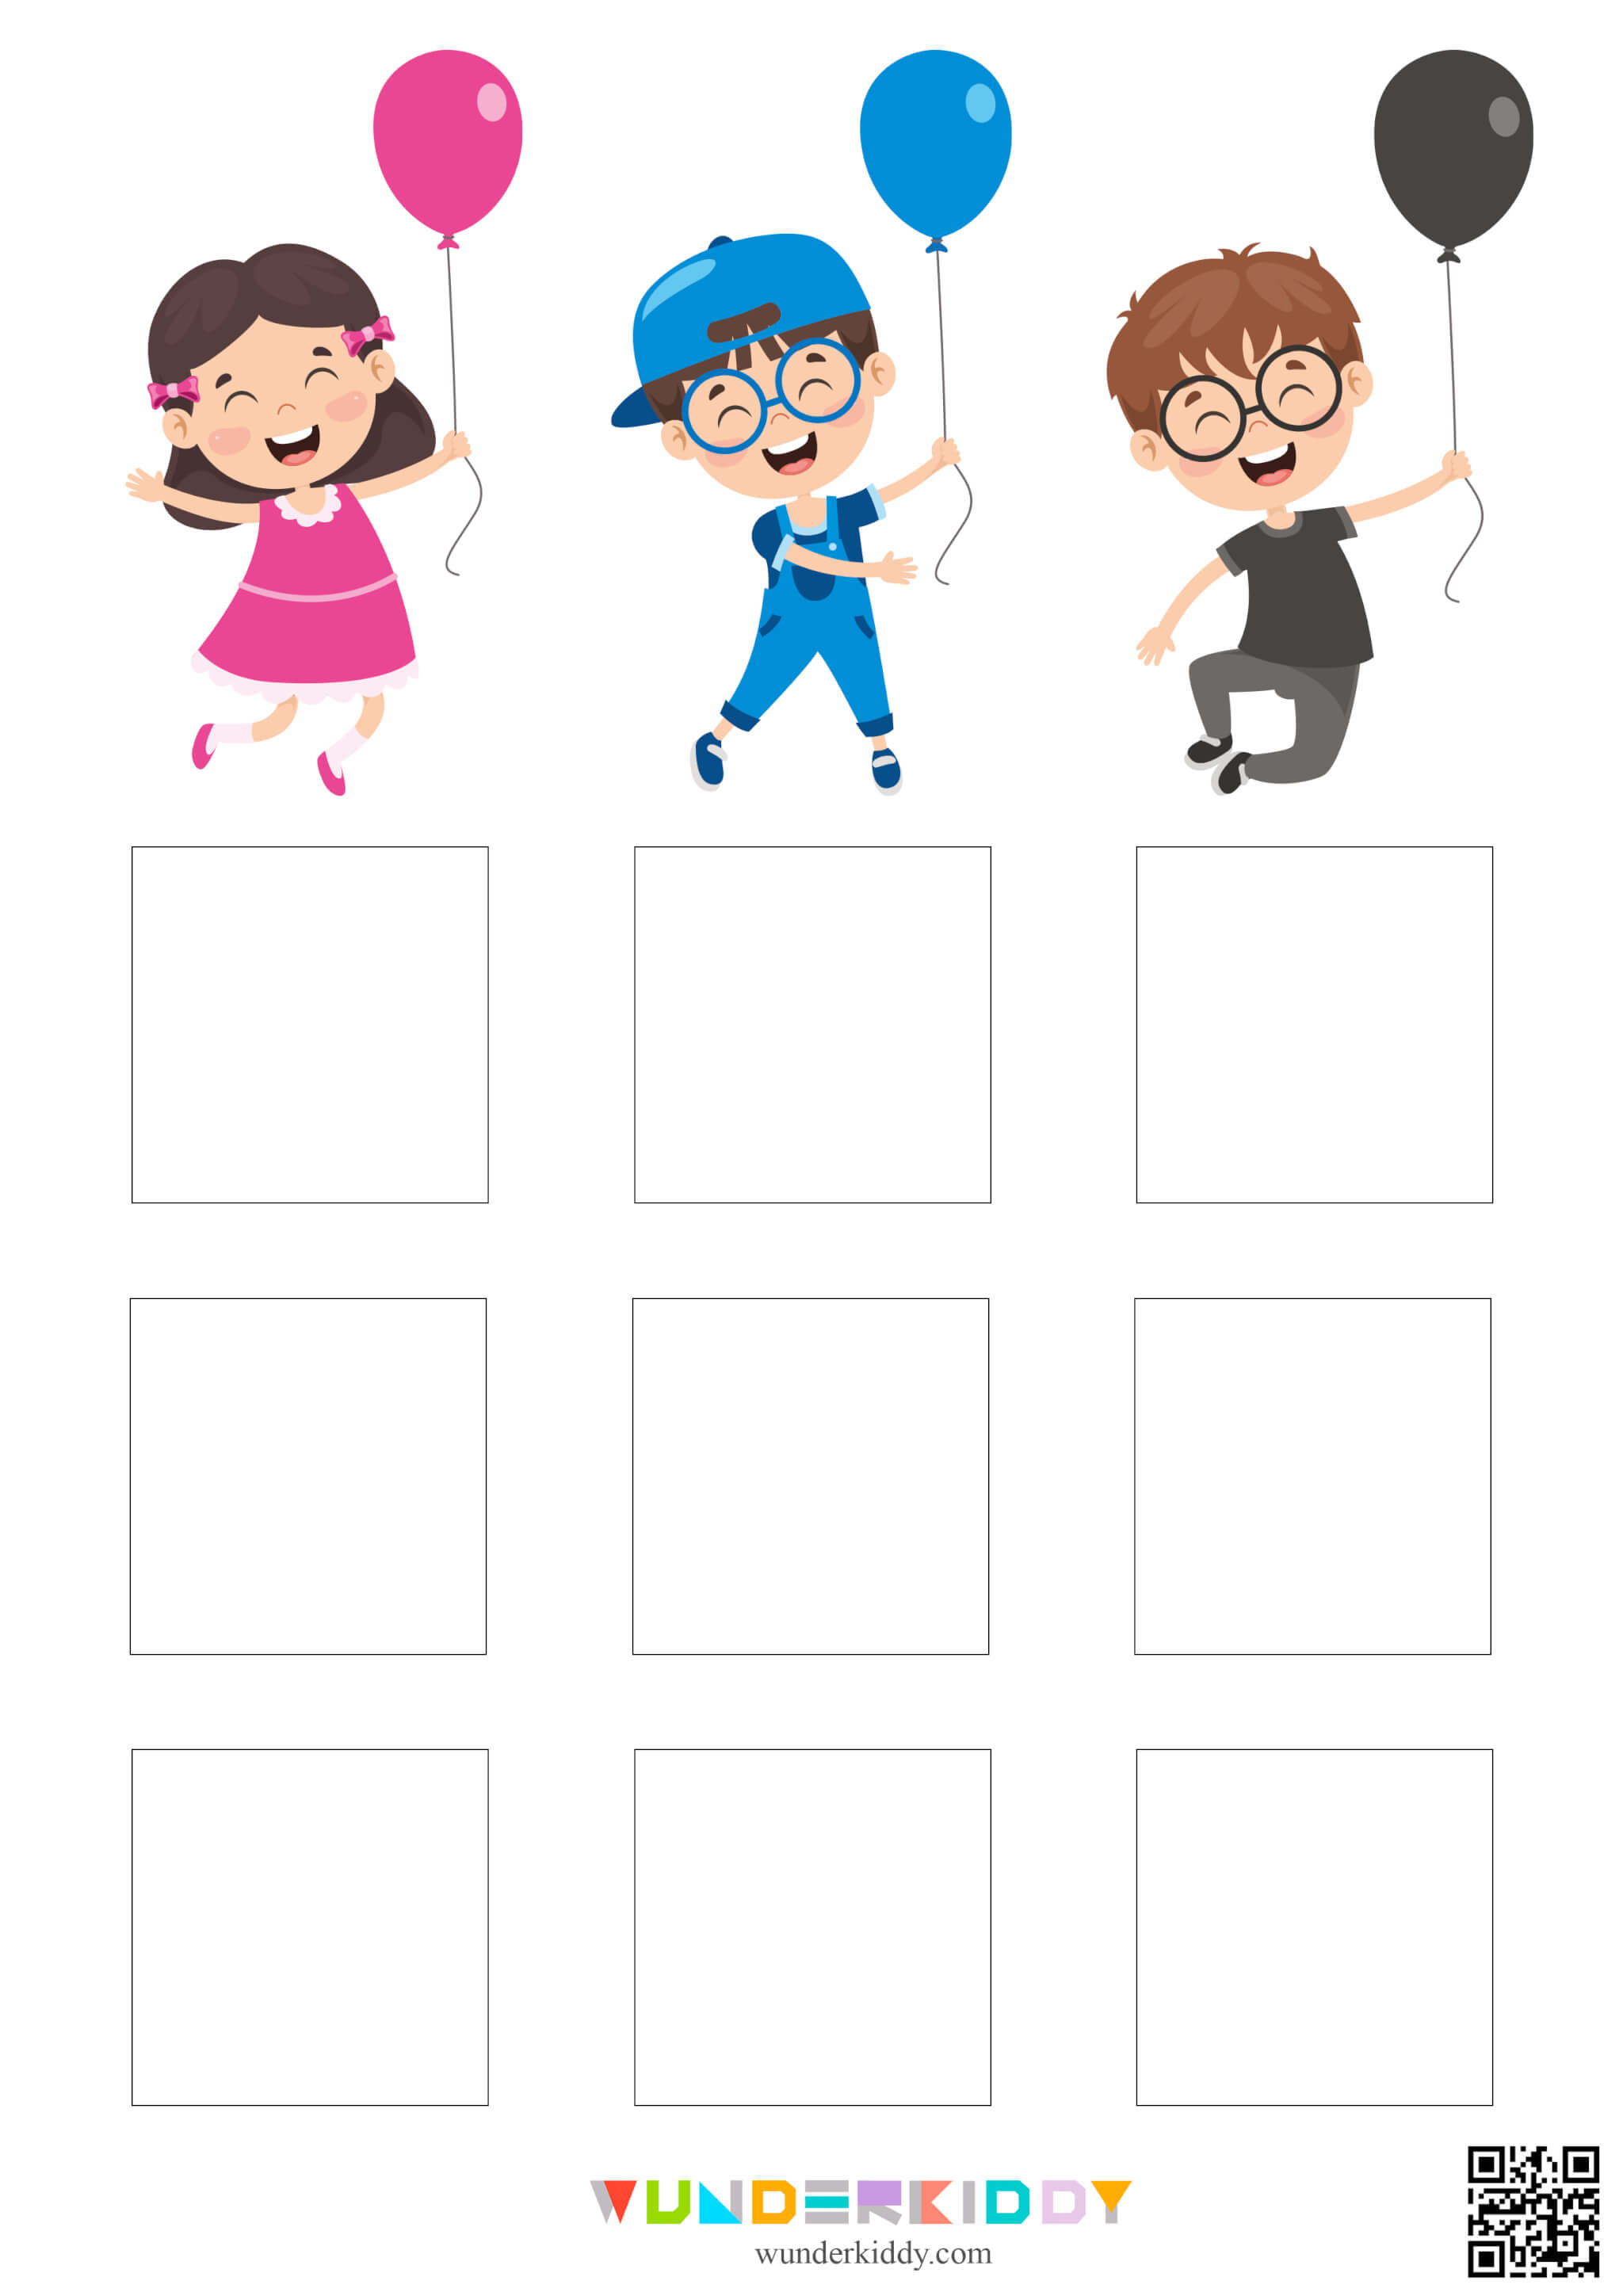 Color Matching Worksheets for Kindergarten - Image 3